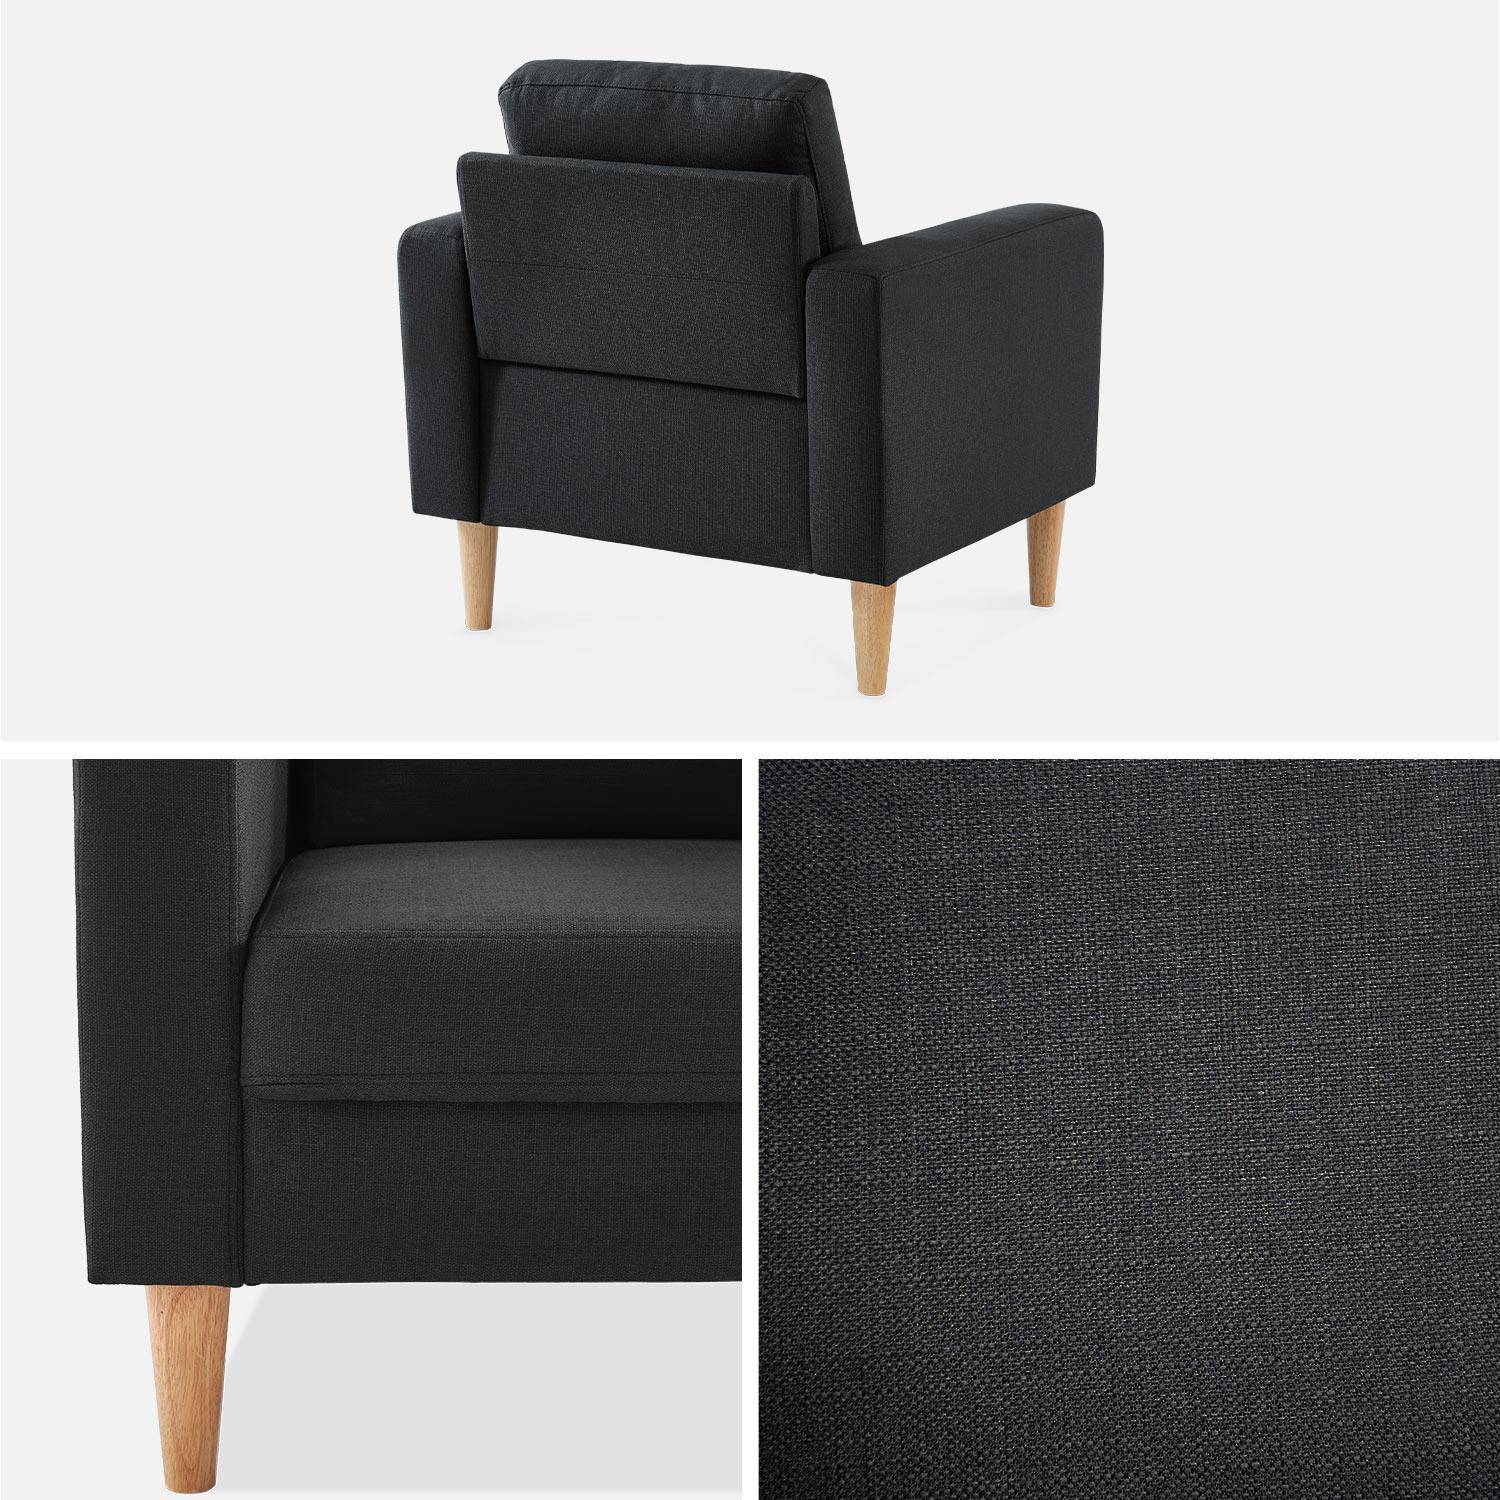 Sillón de tela gris oscuro - Bjorn - Sillón 1 plaza fijo recto patas madera, sillón escandinavo   Photo4